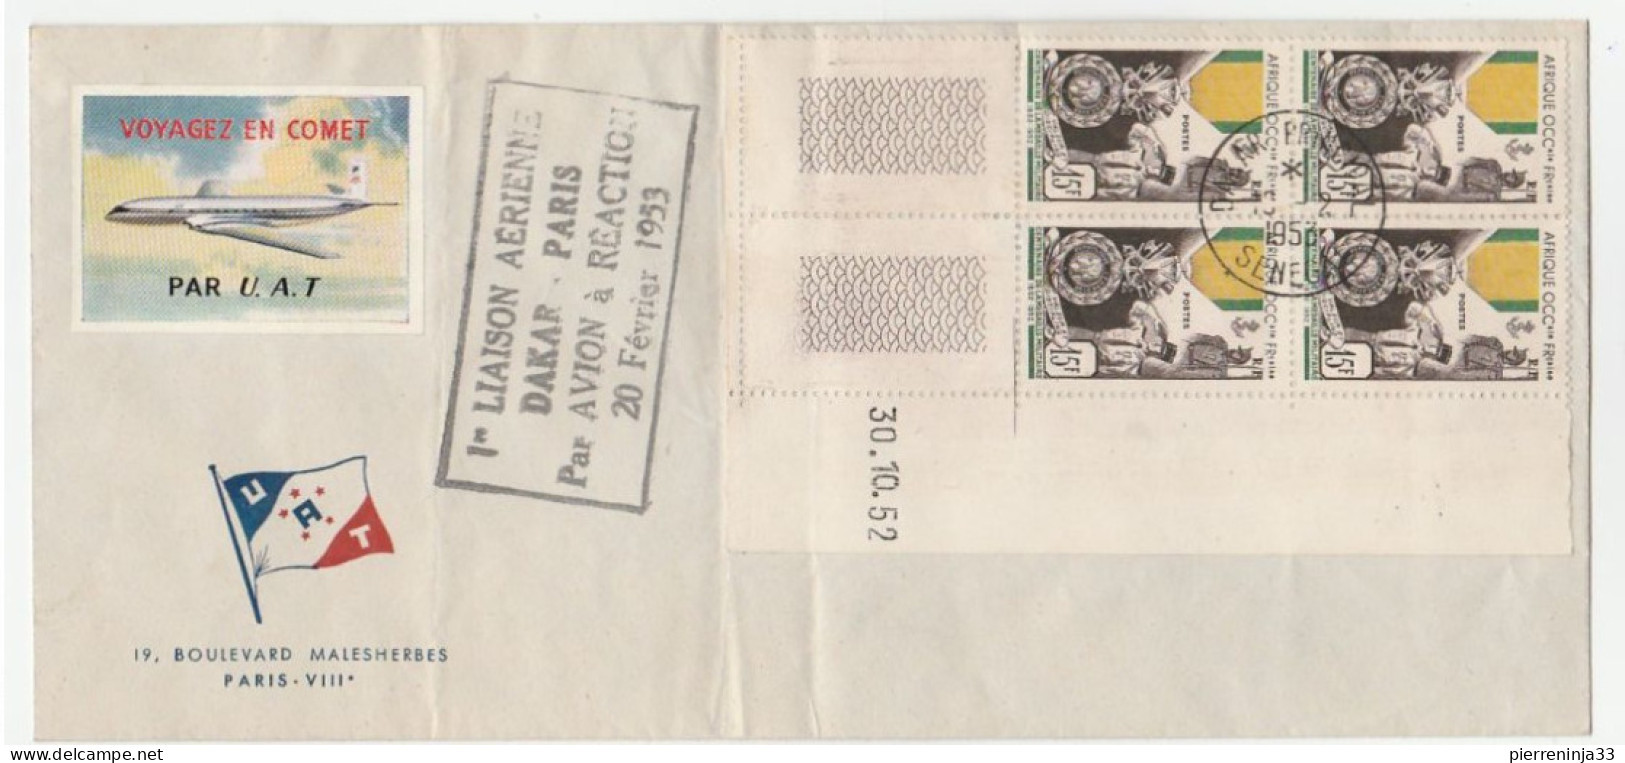 Lettre Avec Cachet 1ère Liaison Aérienne Et Coin Daté "Médaille Militaire AOF" + Vignette Aviation, 1953 - Lettres & Documents